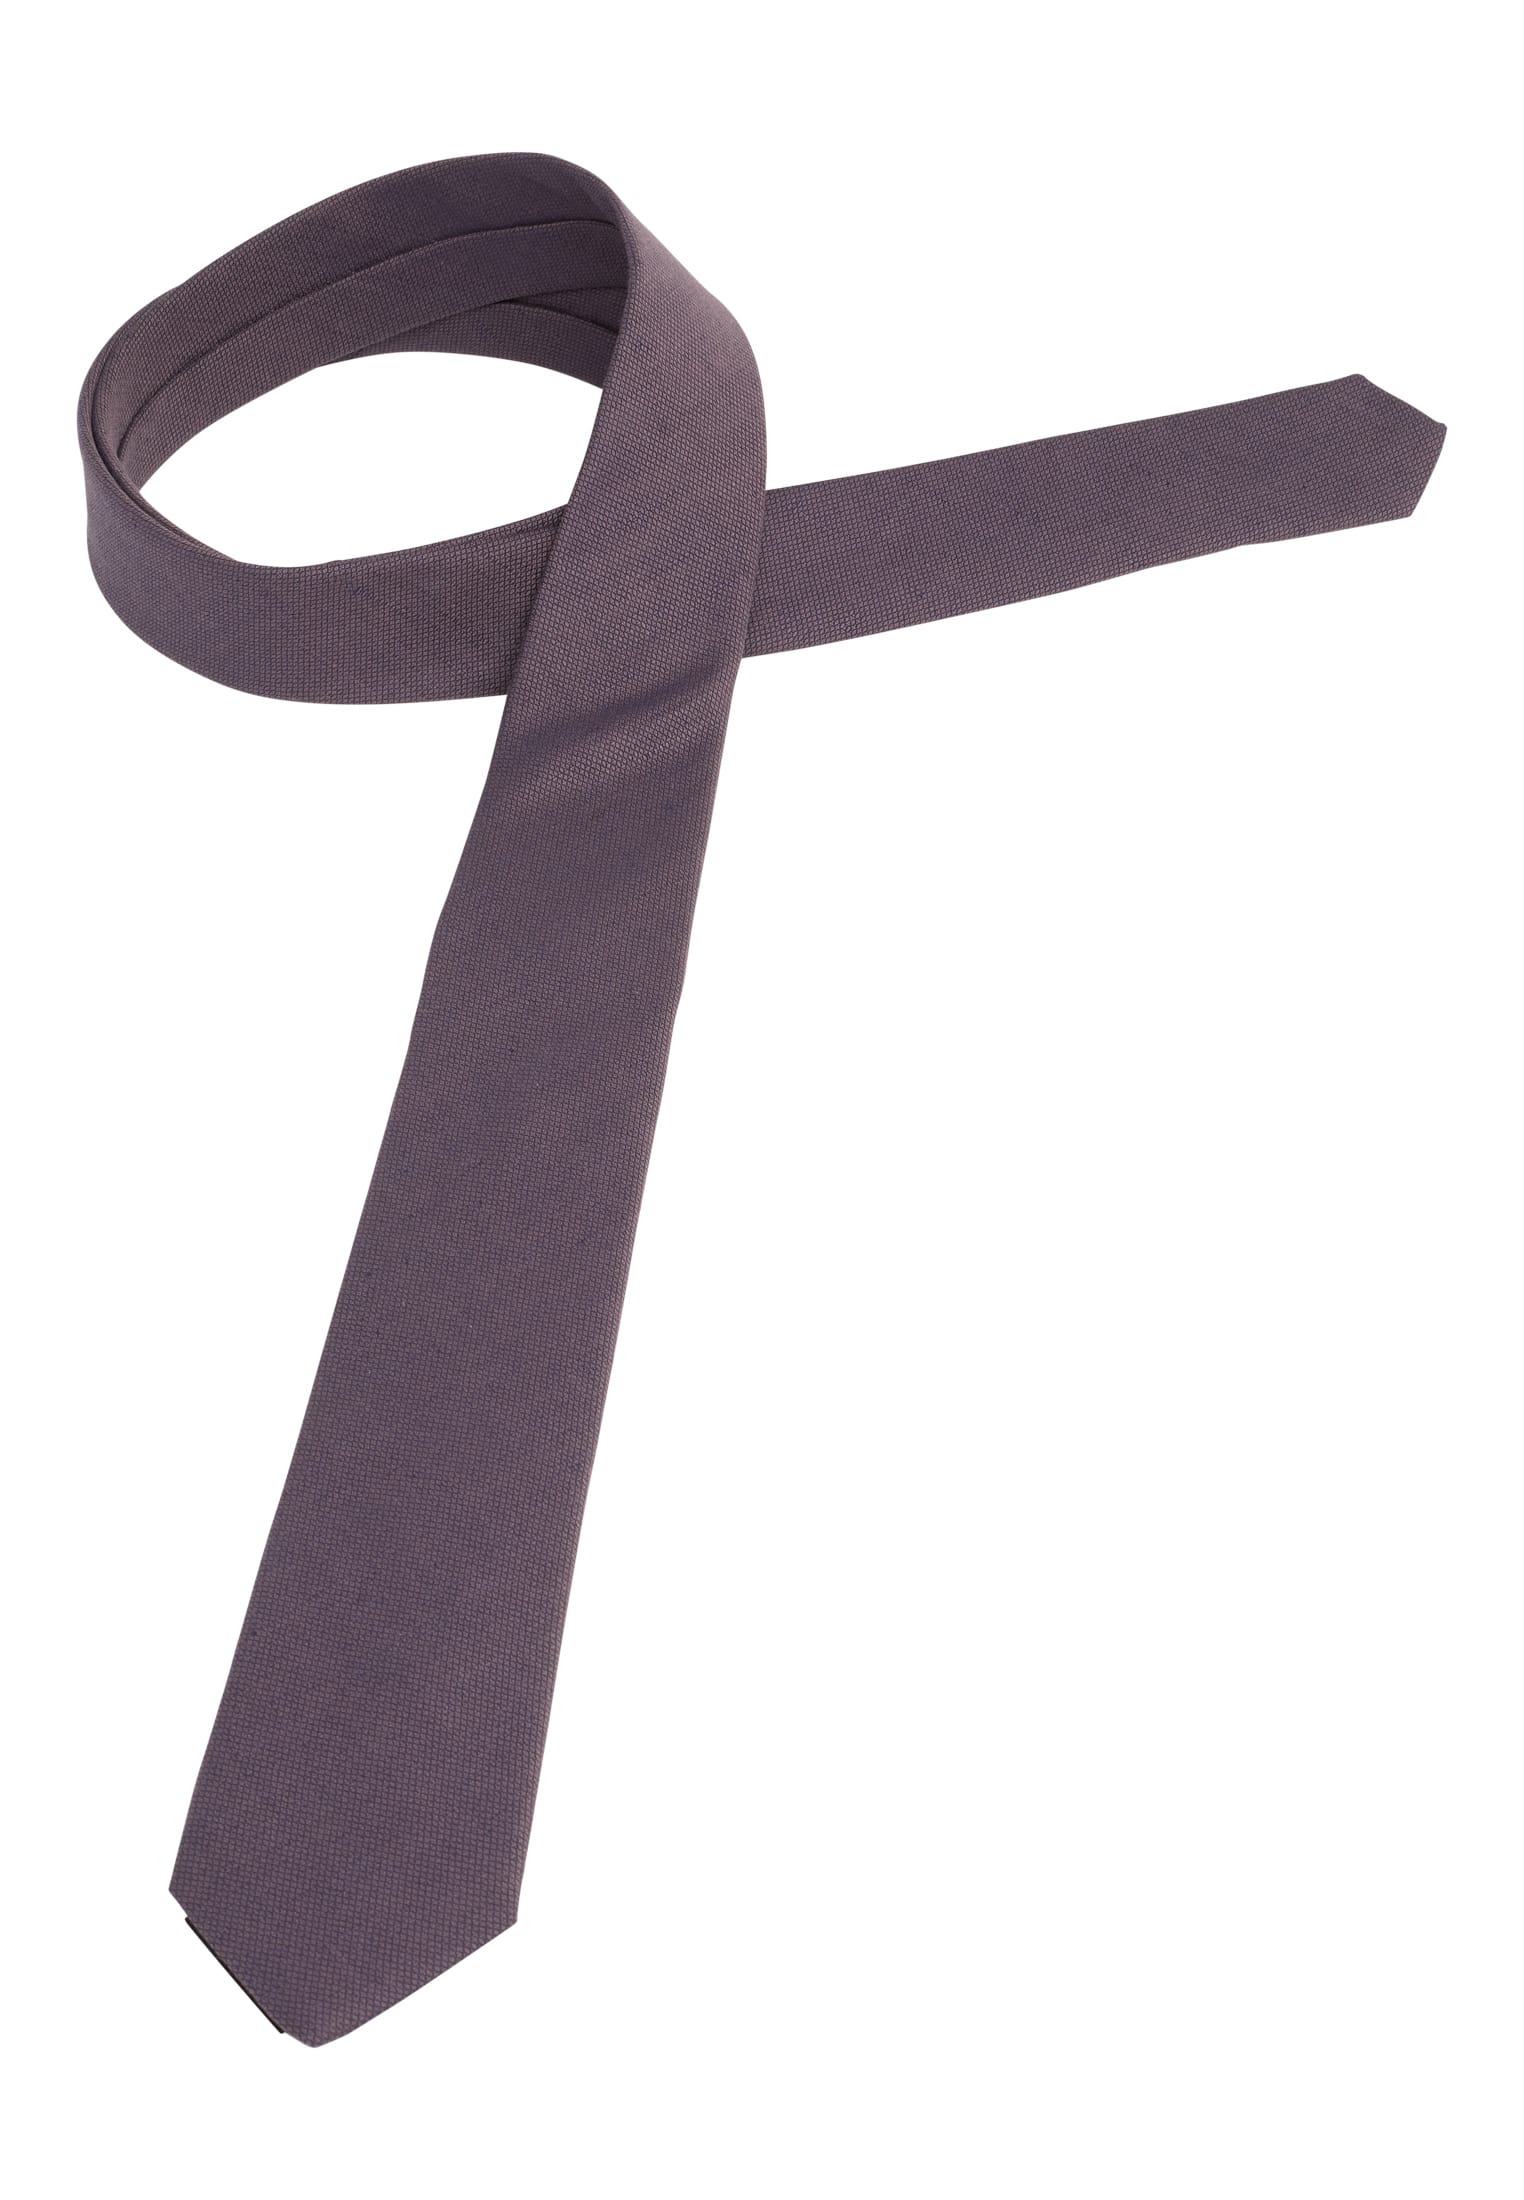 Krawatte in pflaume strukturiert | pflaume | 142 | 1AC01947-09-81-142